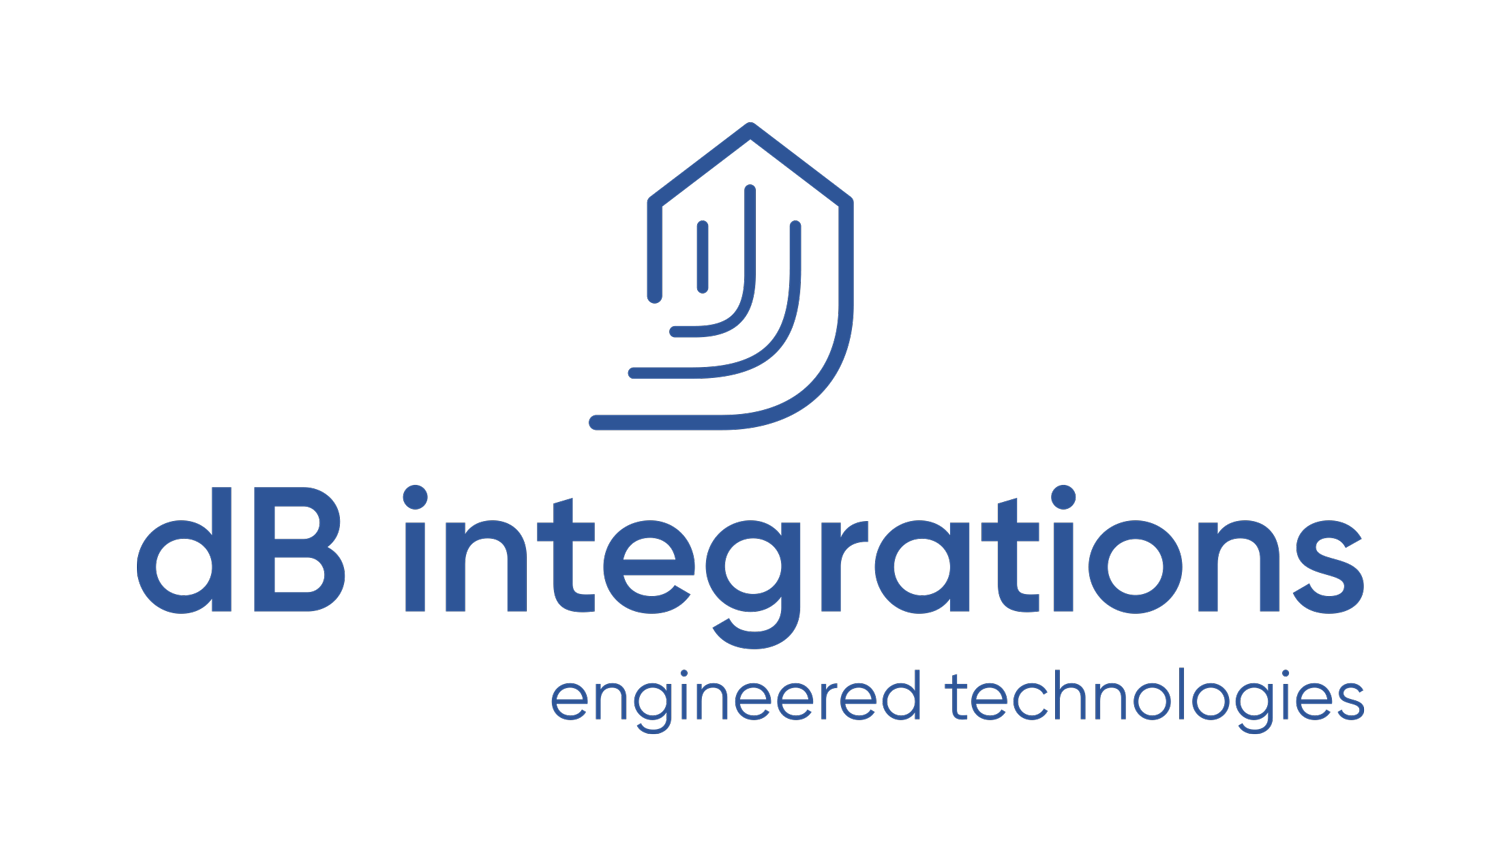 db integrations